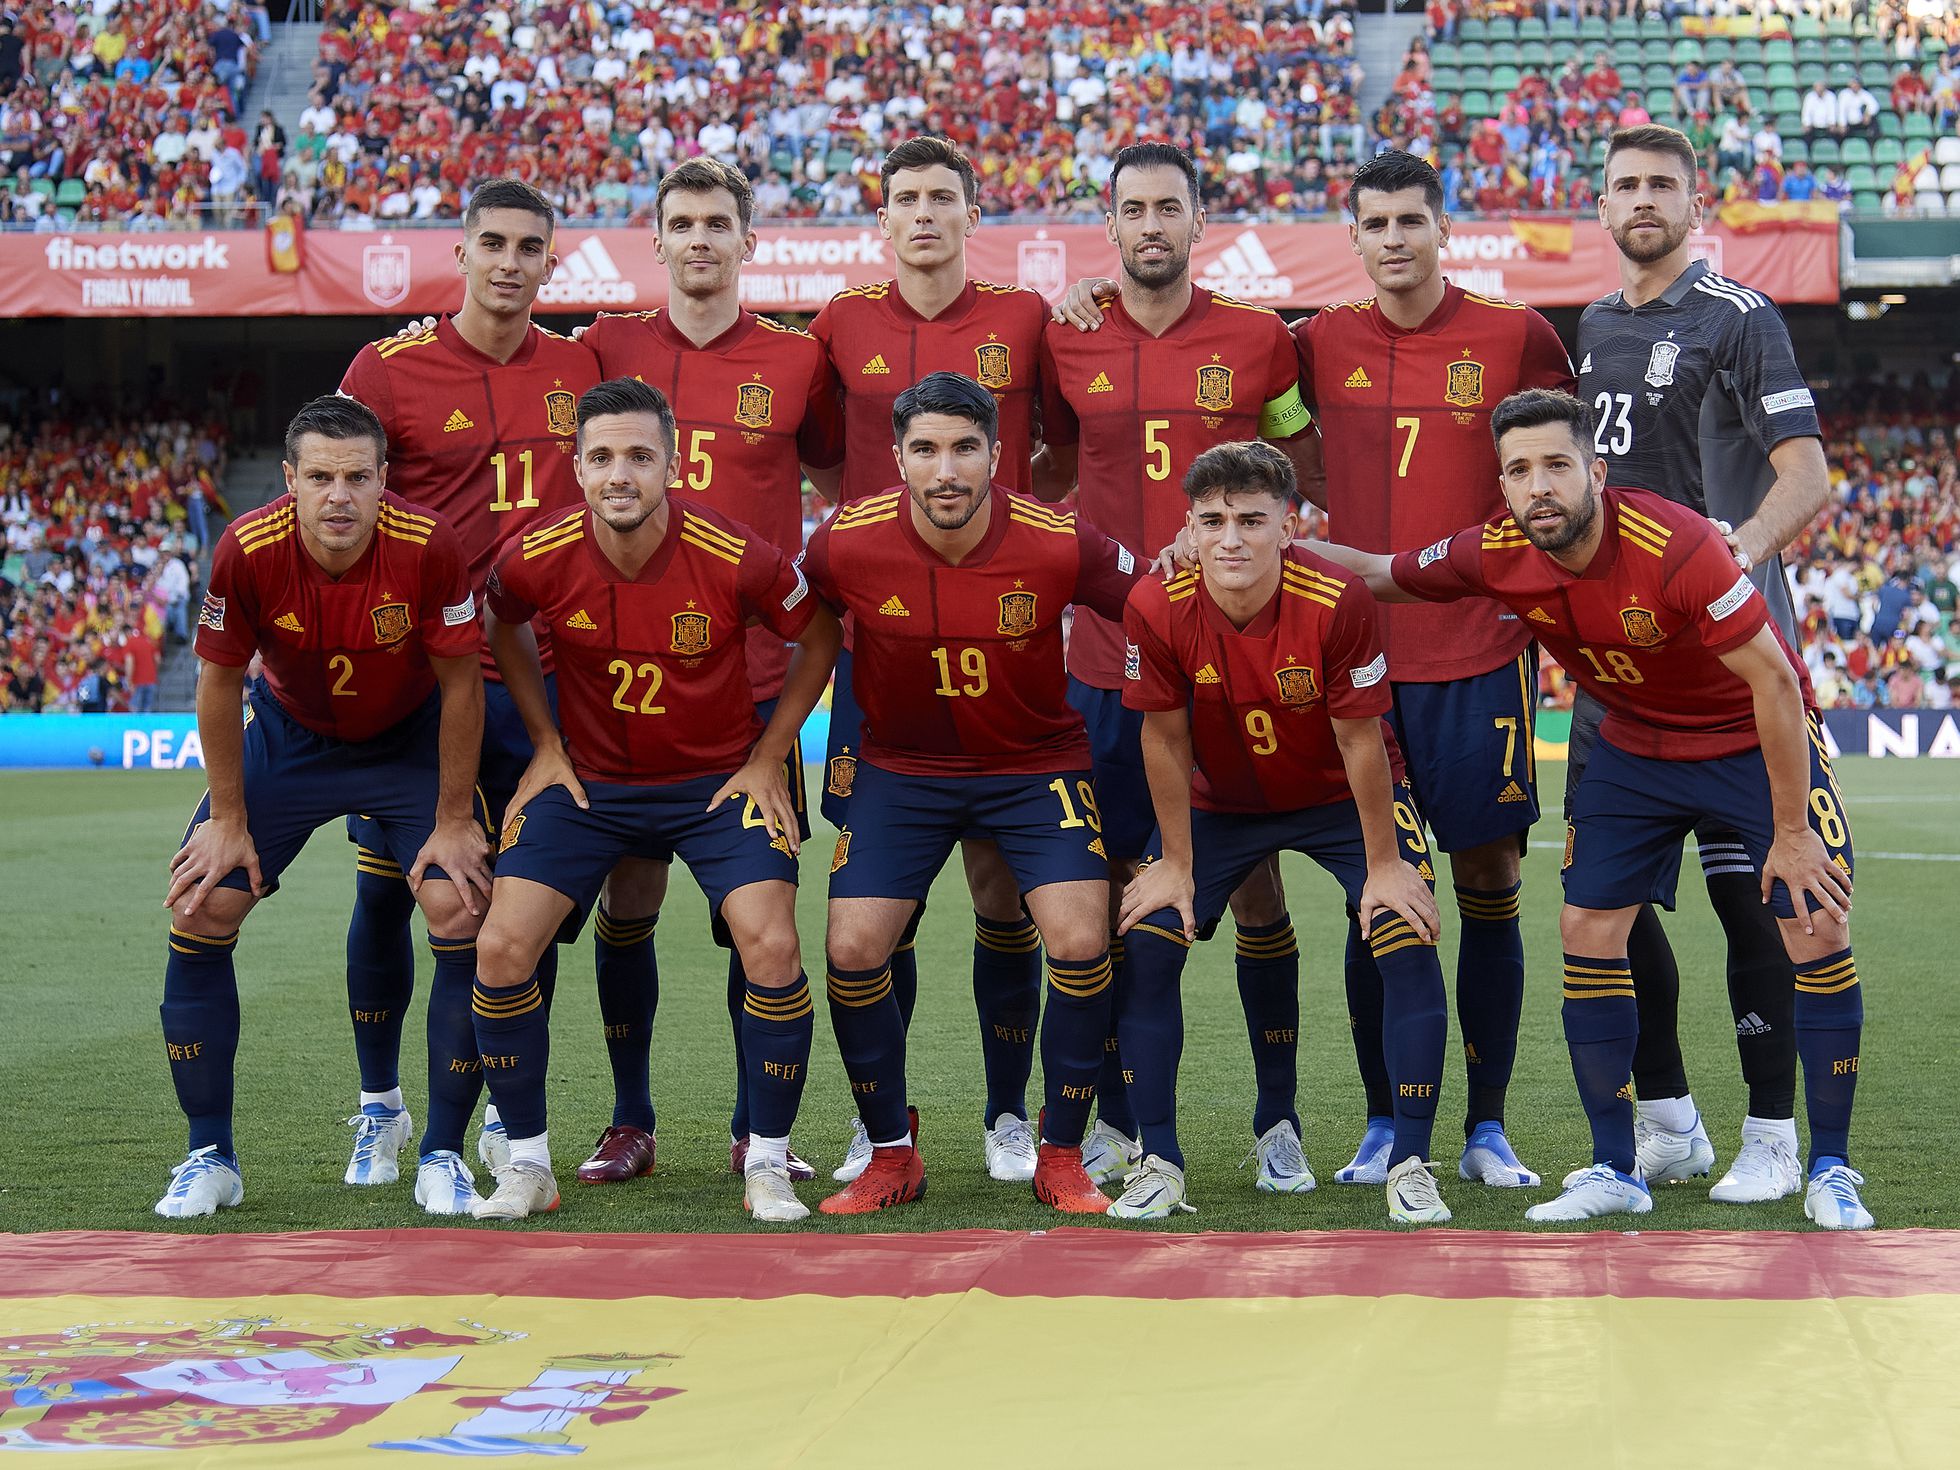 Maletín cuero Arcaico La selección de España en el Mundial de Qatar | Mundial Qatar 2022 | EL PAÍS